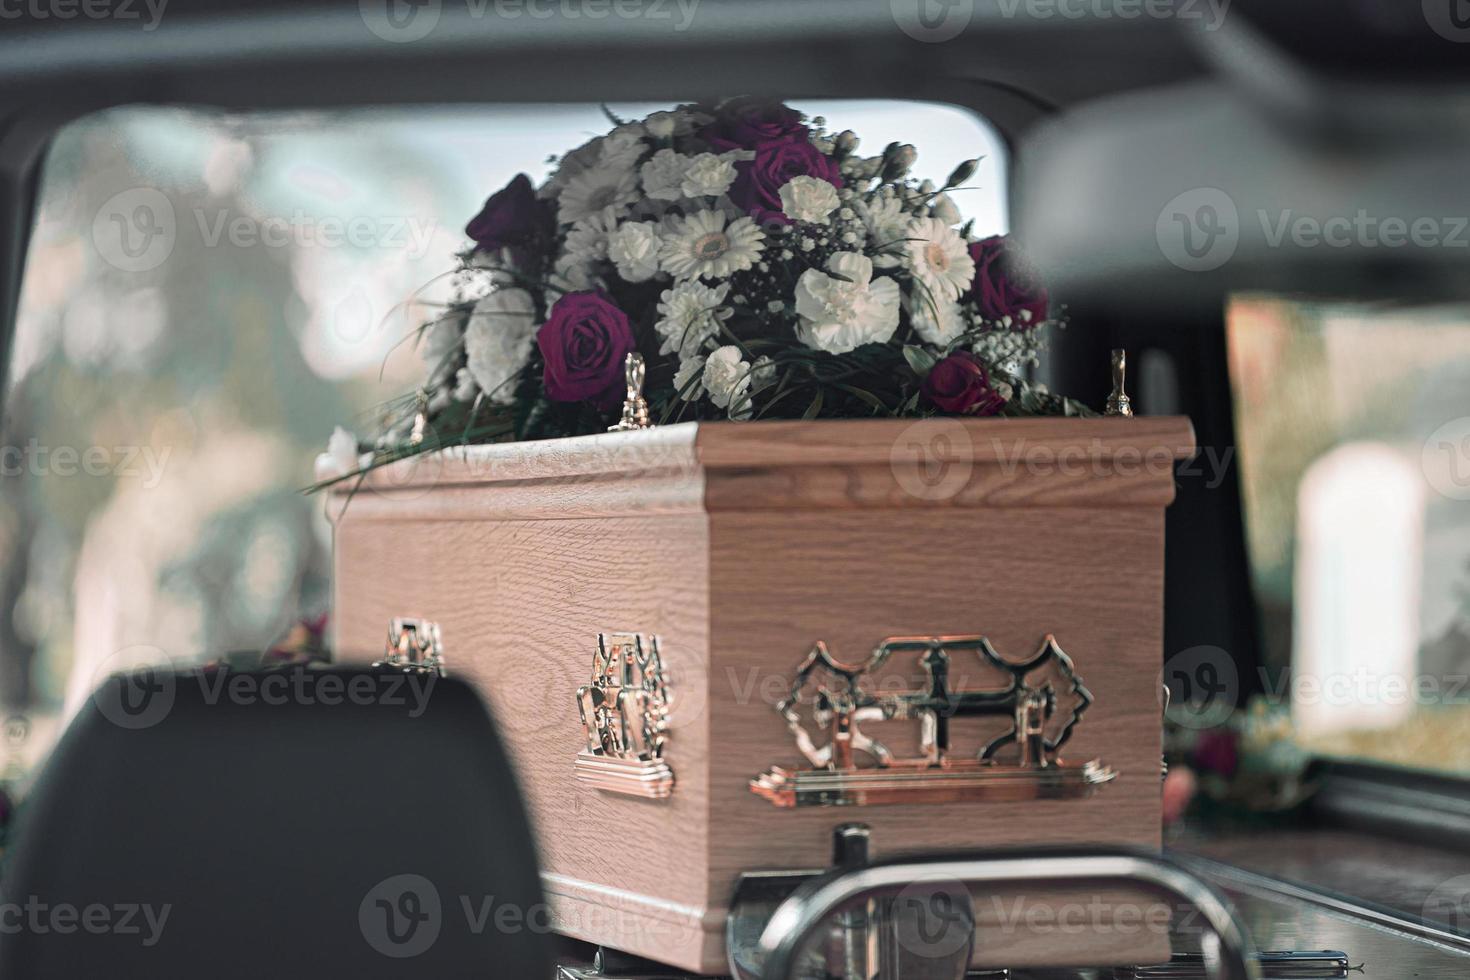 flores funerarias rosas blancas y lirios dentro de un coche fúnebre en un funeral en un día hermoso pero triste foto